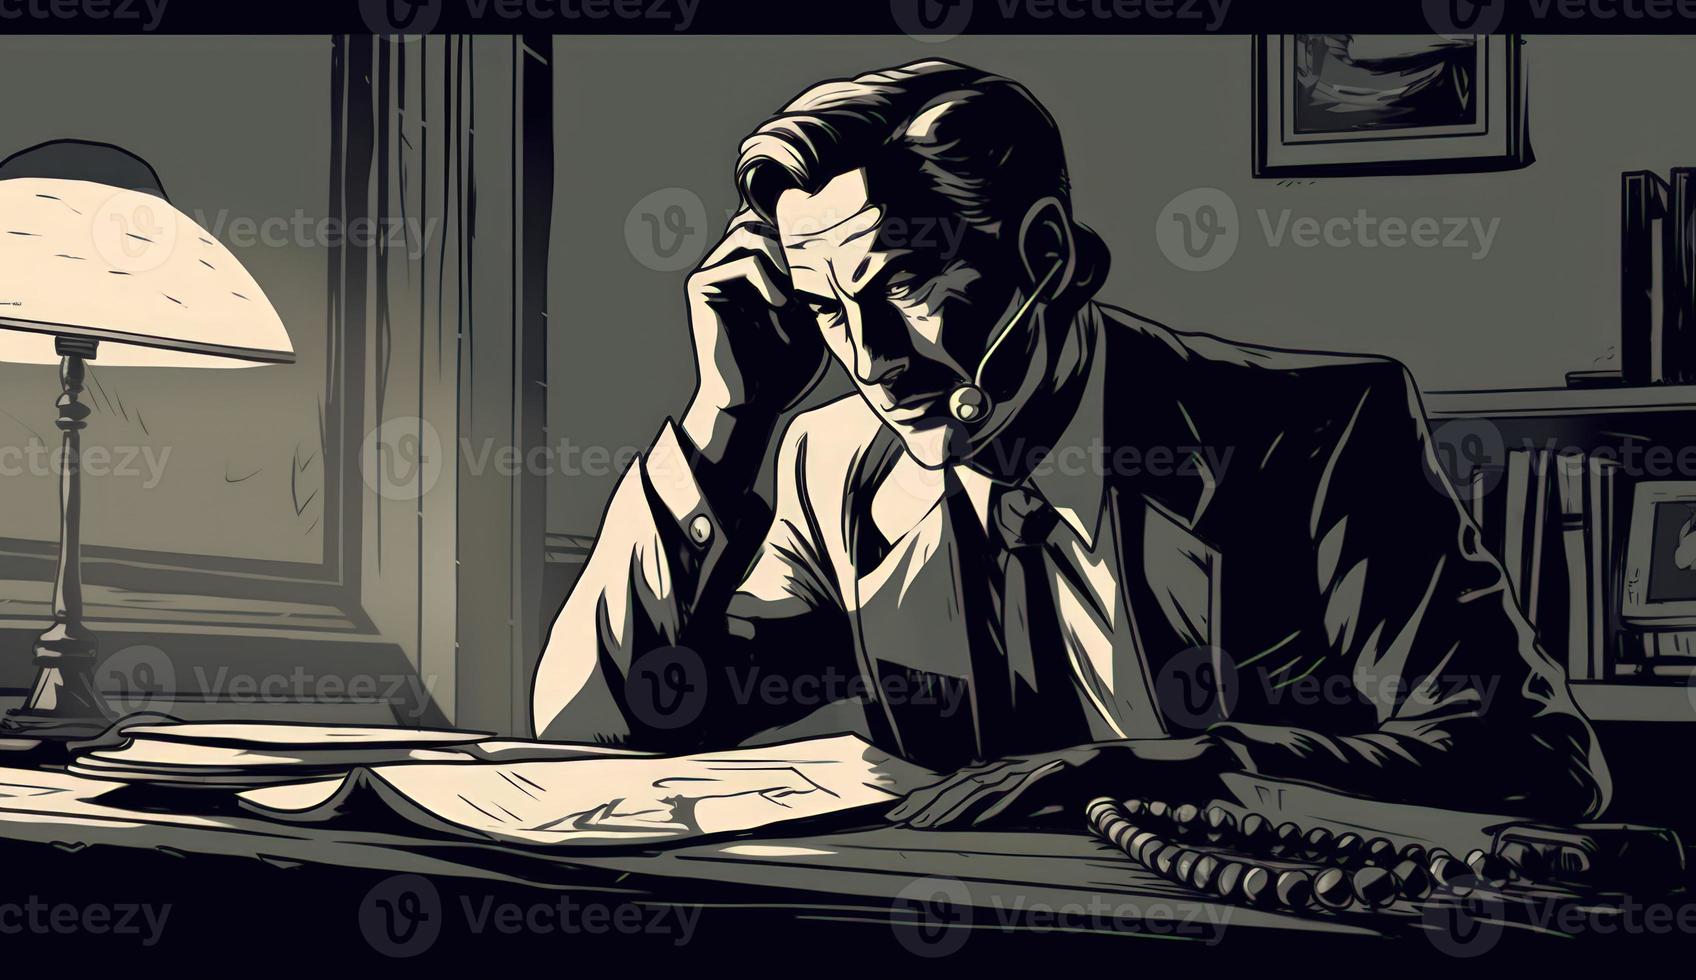 dibujos animados imagen de un empresario sentado a su oficina escritorio, hablando en el teléfono, tomando notas o firma documentos, representando un ocupado trabajo ambiente. foto